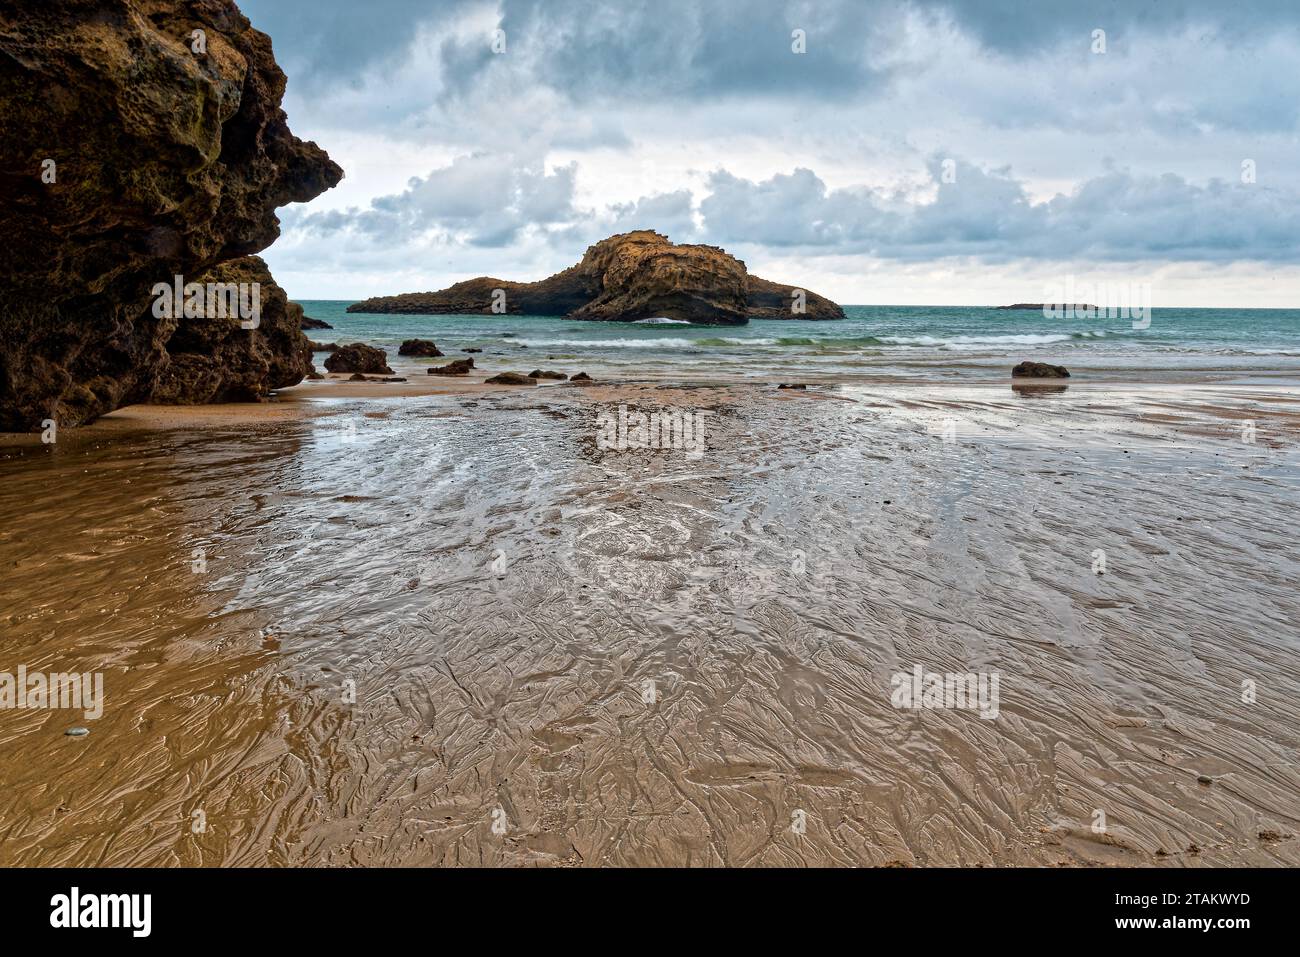 la plage de biarritz au pays basque francais en ete apres la pluie avec quelqus vacanciers et surfers Foto Stock